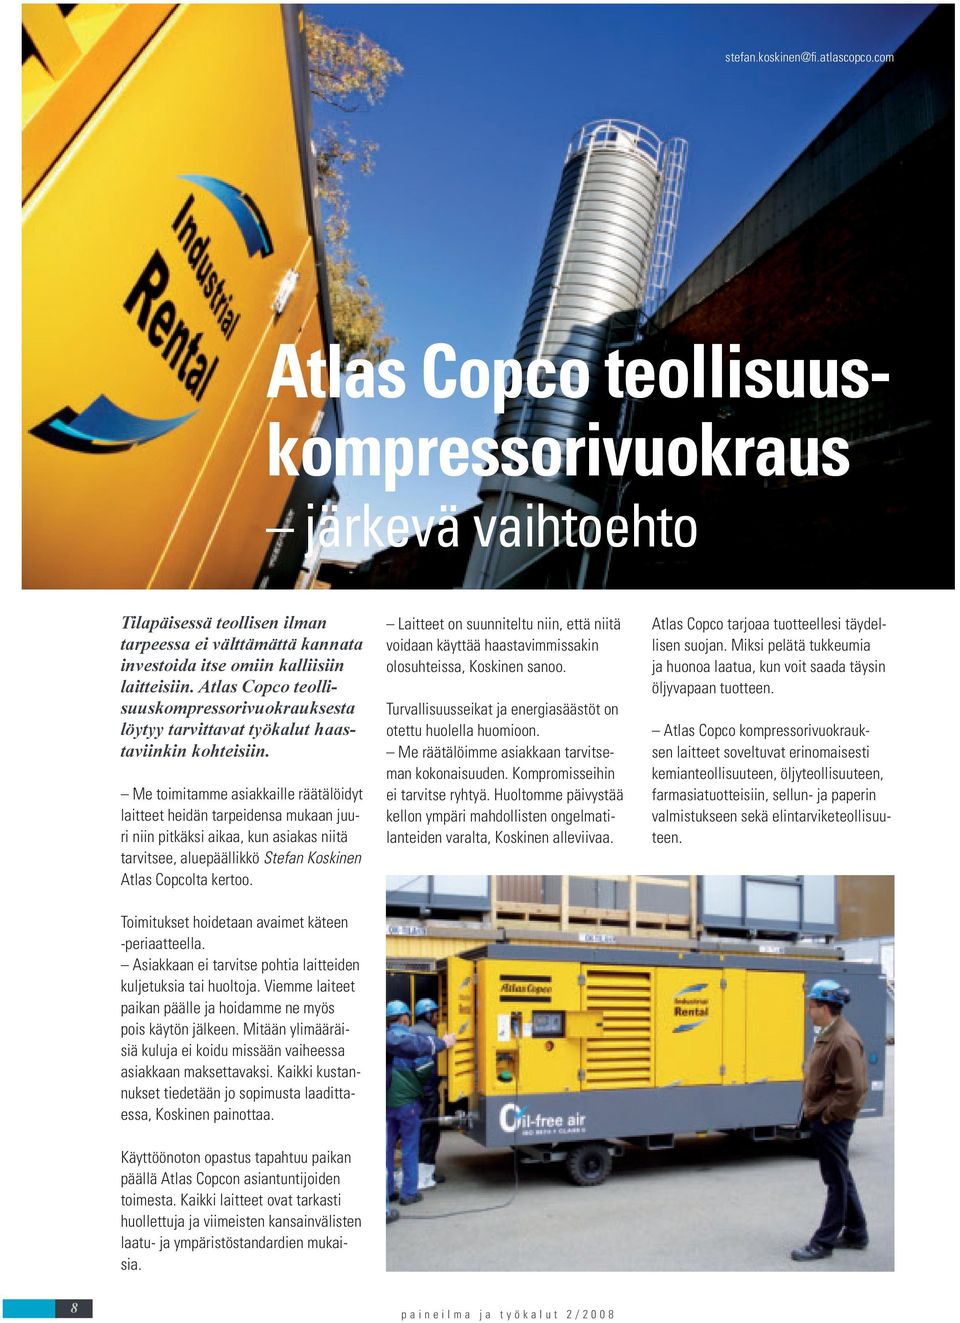 Atlas Copco teollisuuskompressorivuokrauksesta löytyy tarvittavat työkalut haastaviinkin kohteisiin.